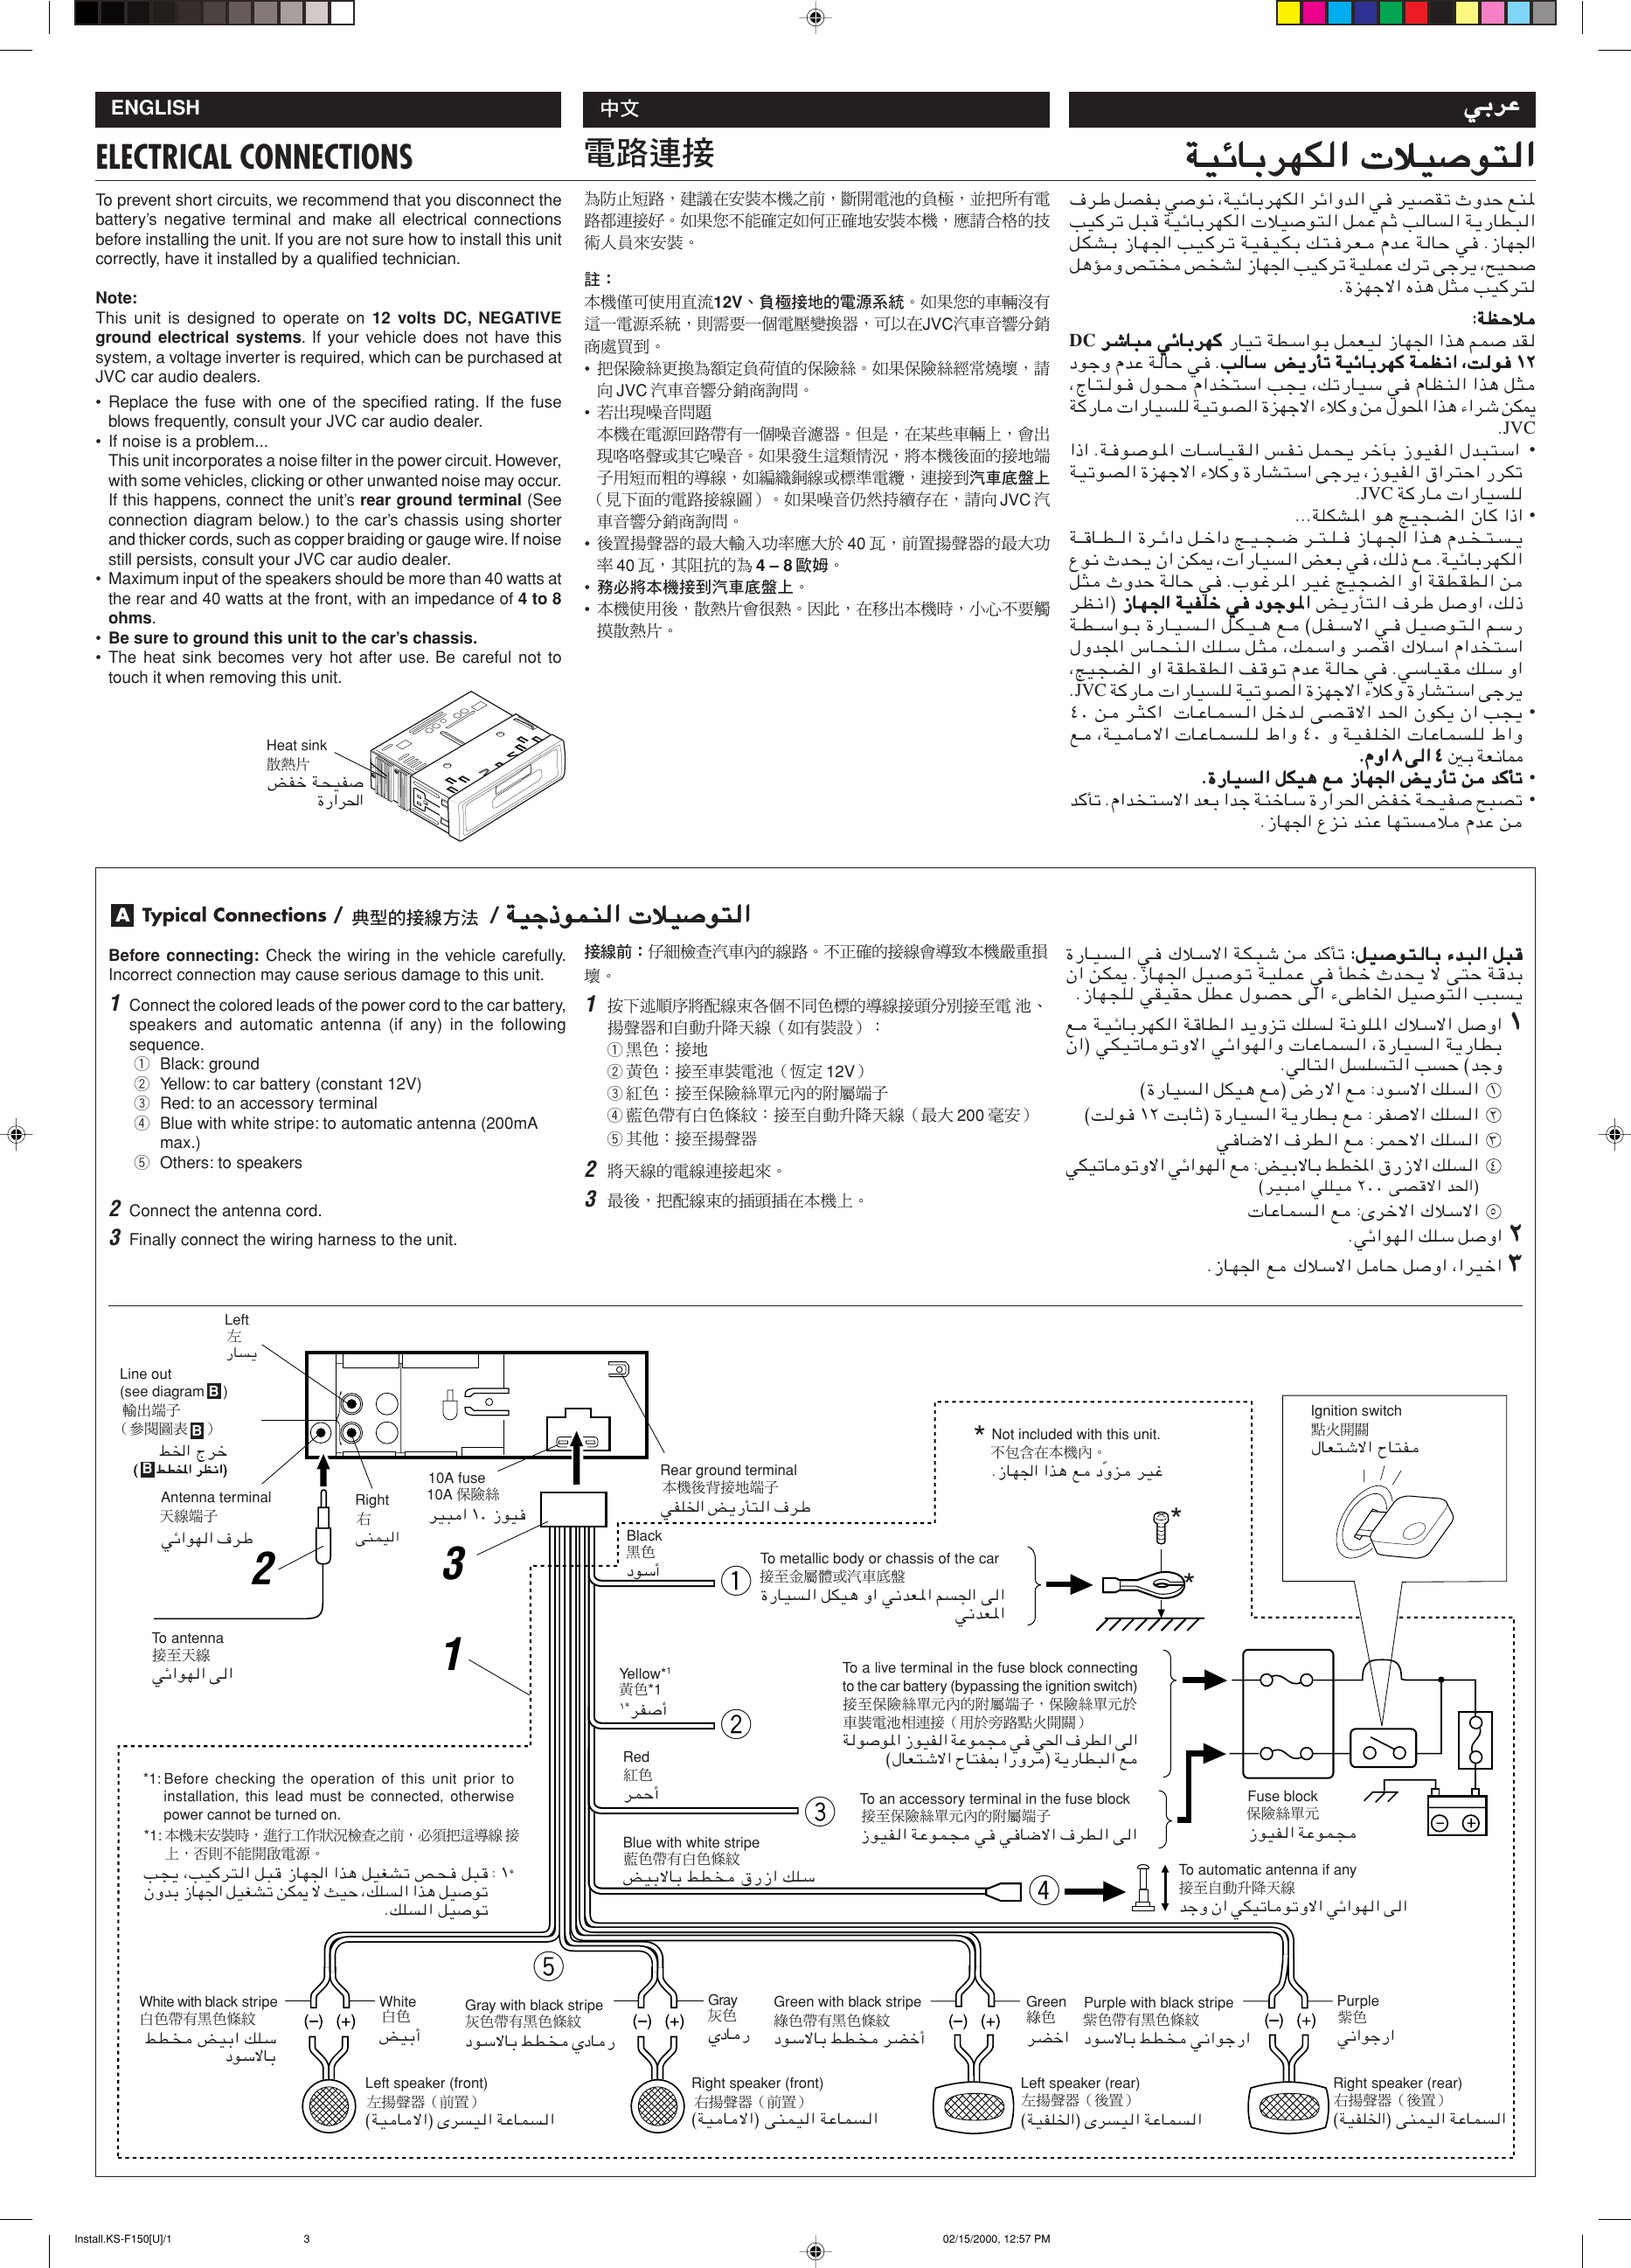 Page 3 of 4 - JVC KS-F150 User Manual FSUN3096-T181